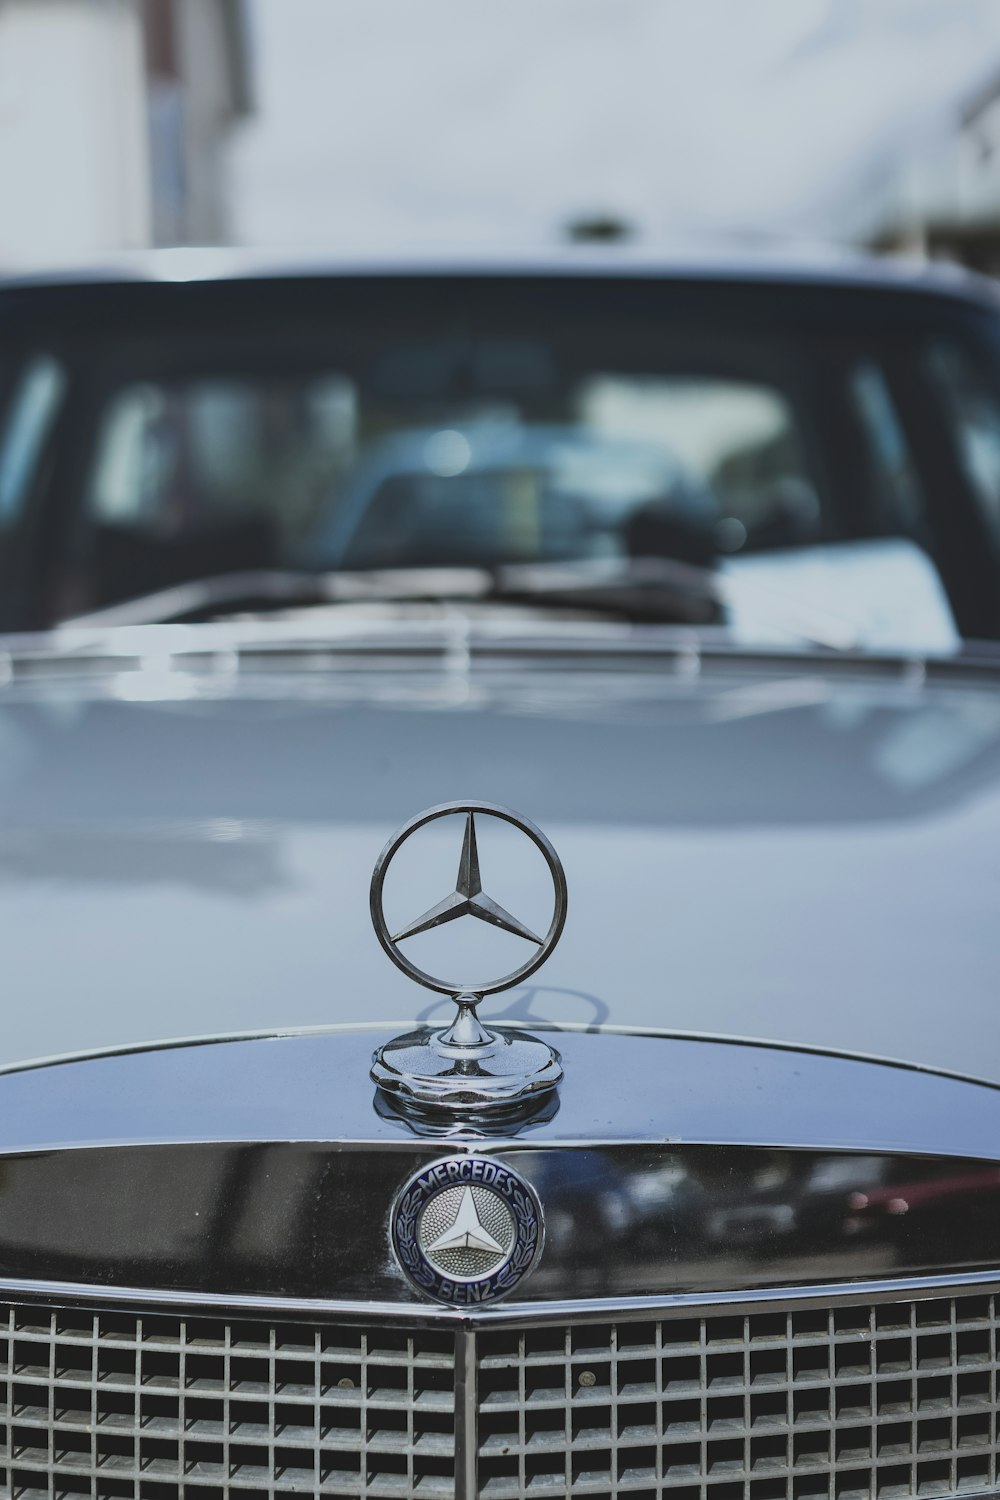 Ein Mercedes-Emblem auf der Vorderseite eines Autos